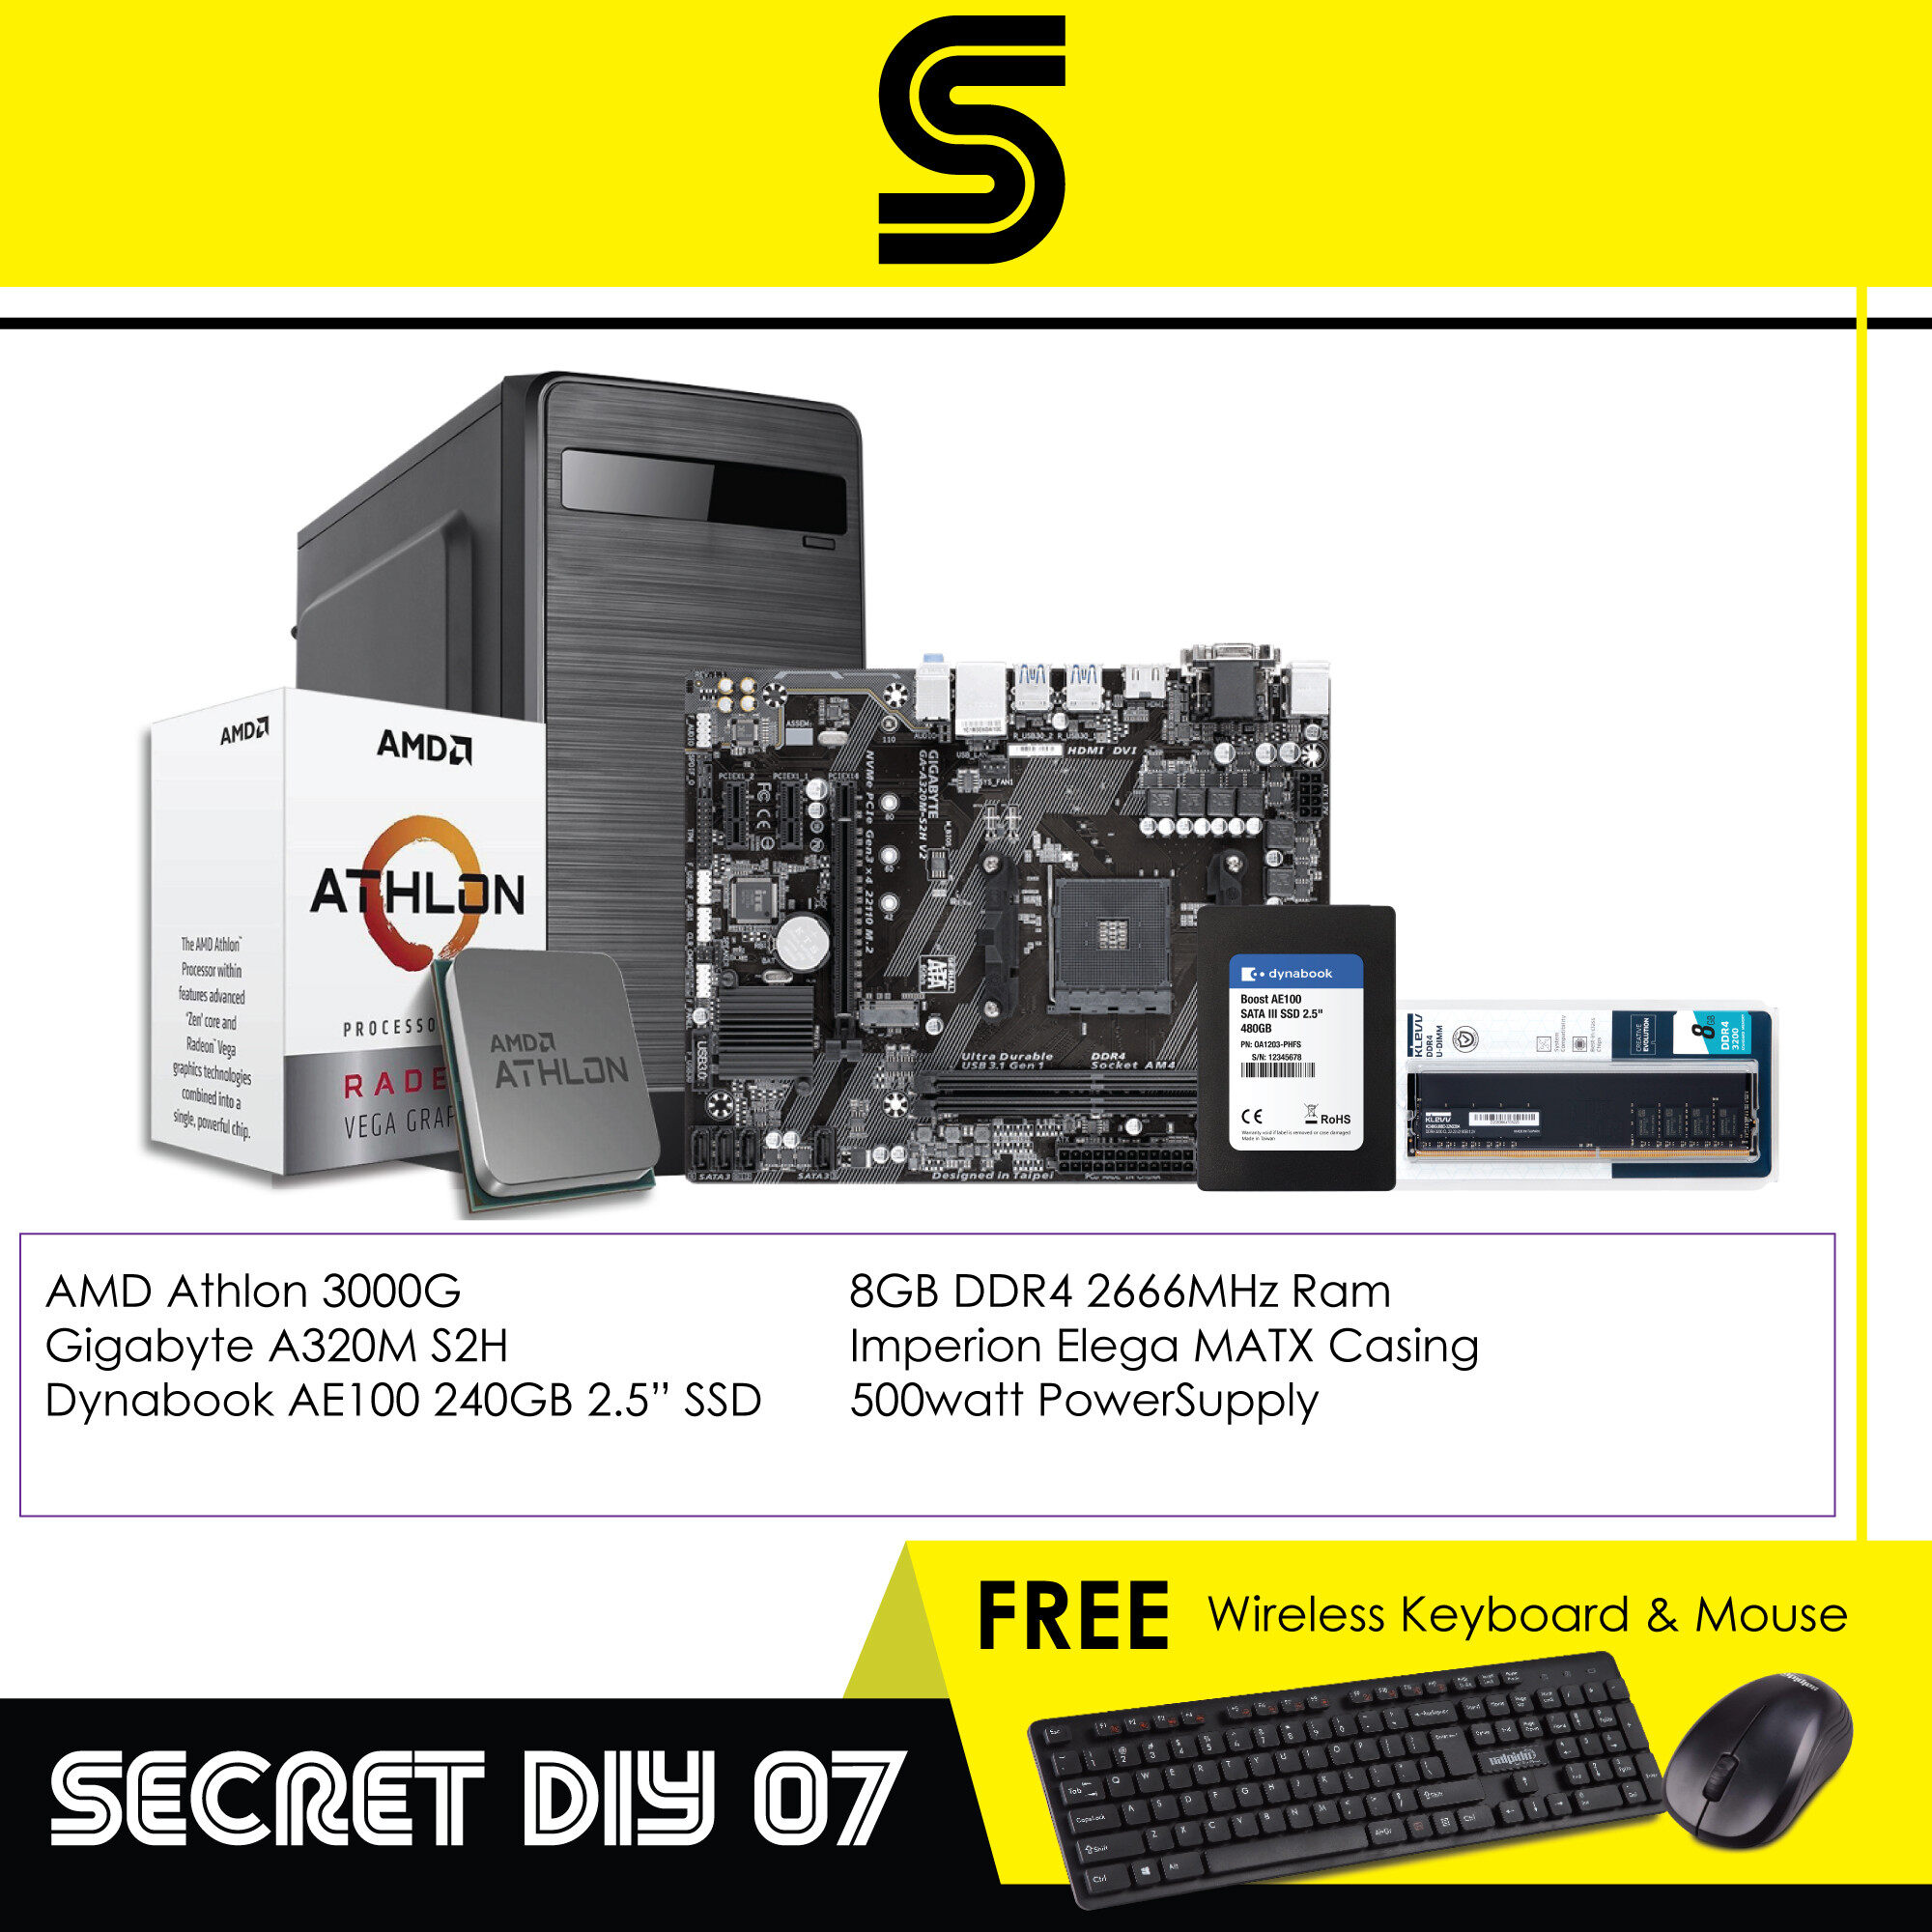 AMD Athlon Secret DIY 07 PC - AMD Athlon 3000G/A320M Motherboard/8GB RGB DDR4 Ram/240GB 2.5" SSD/MATX Case/500w PowerSupply